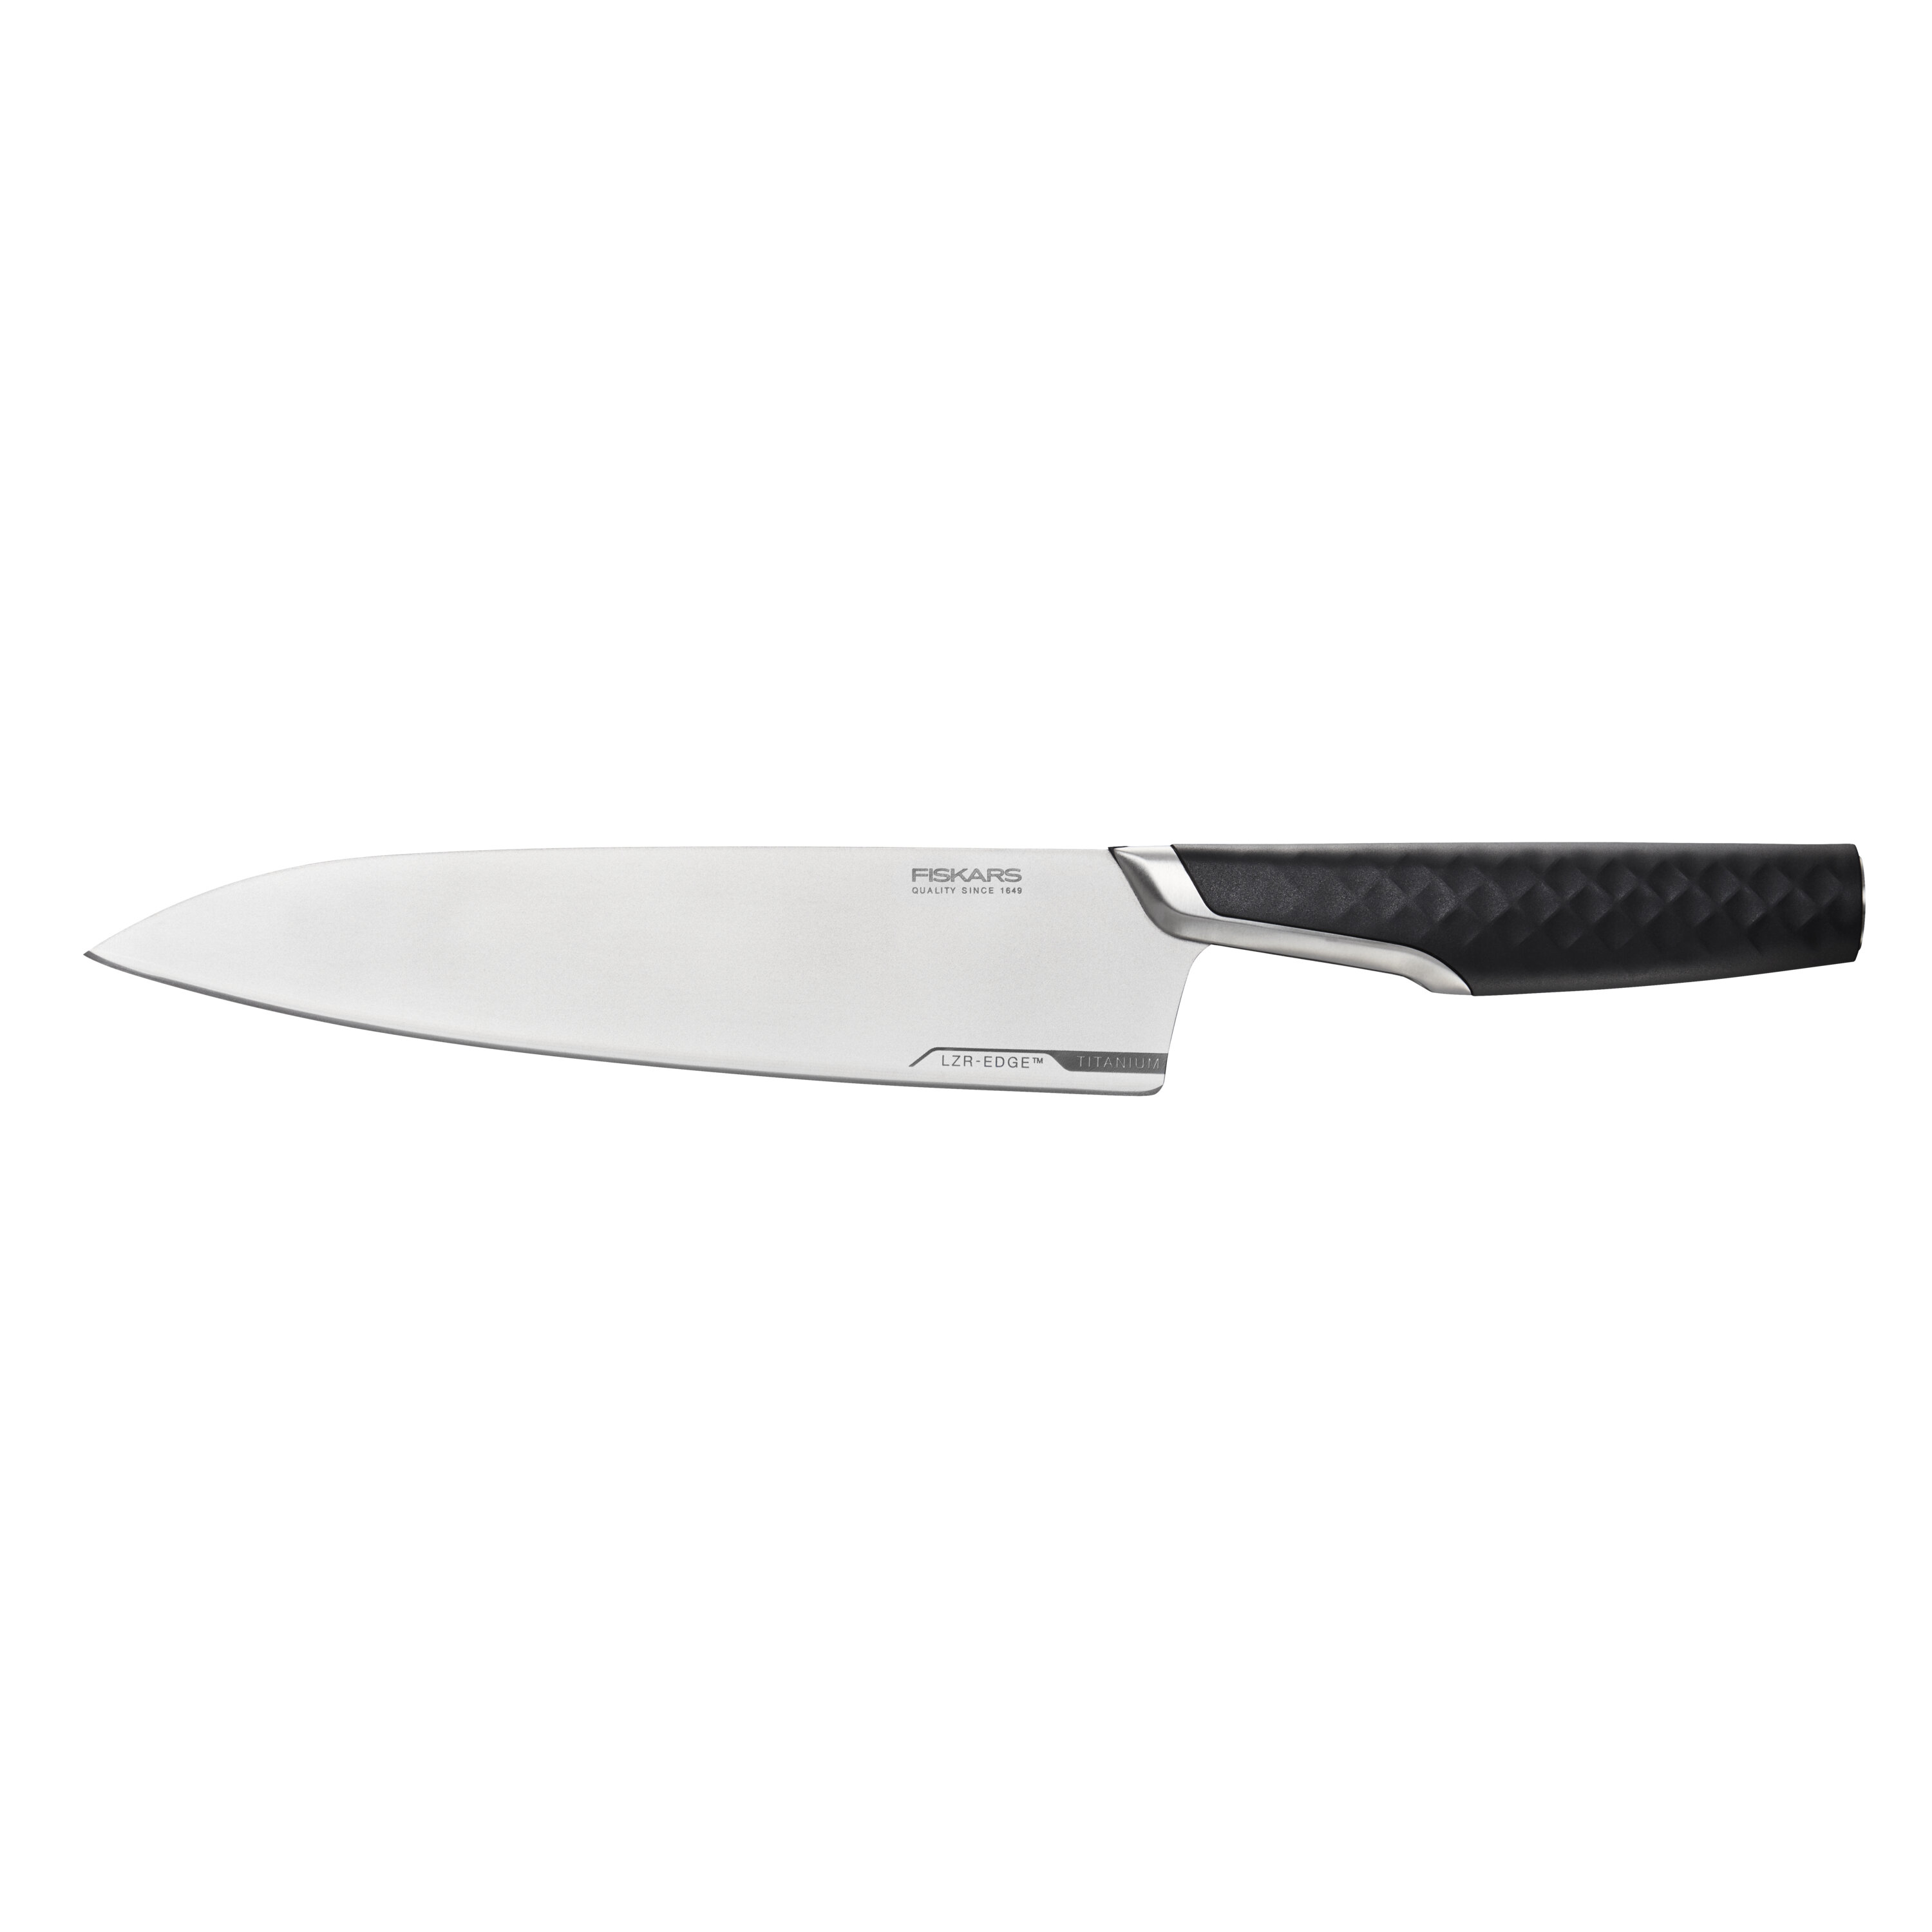 Pro Le Blanc Paring Knife, 10 cm